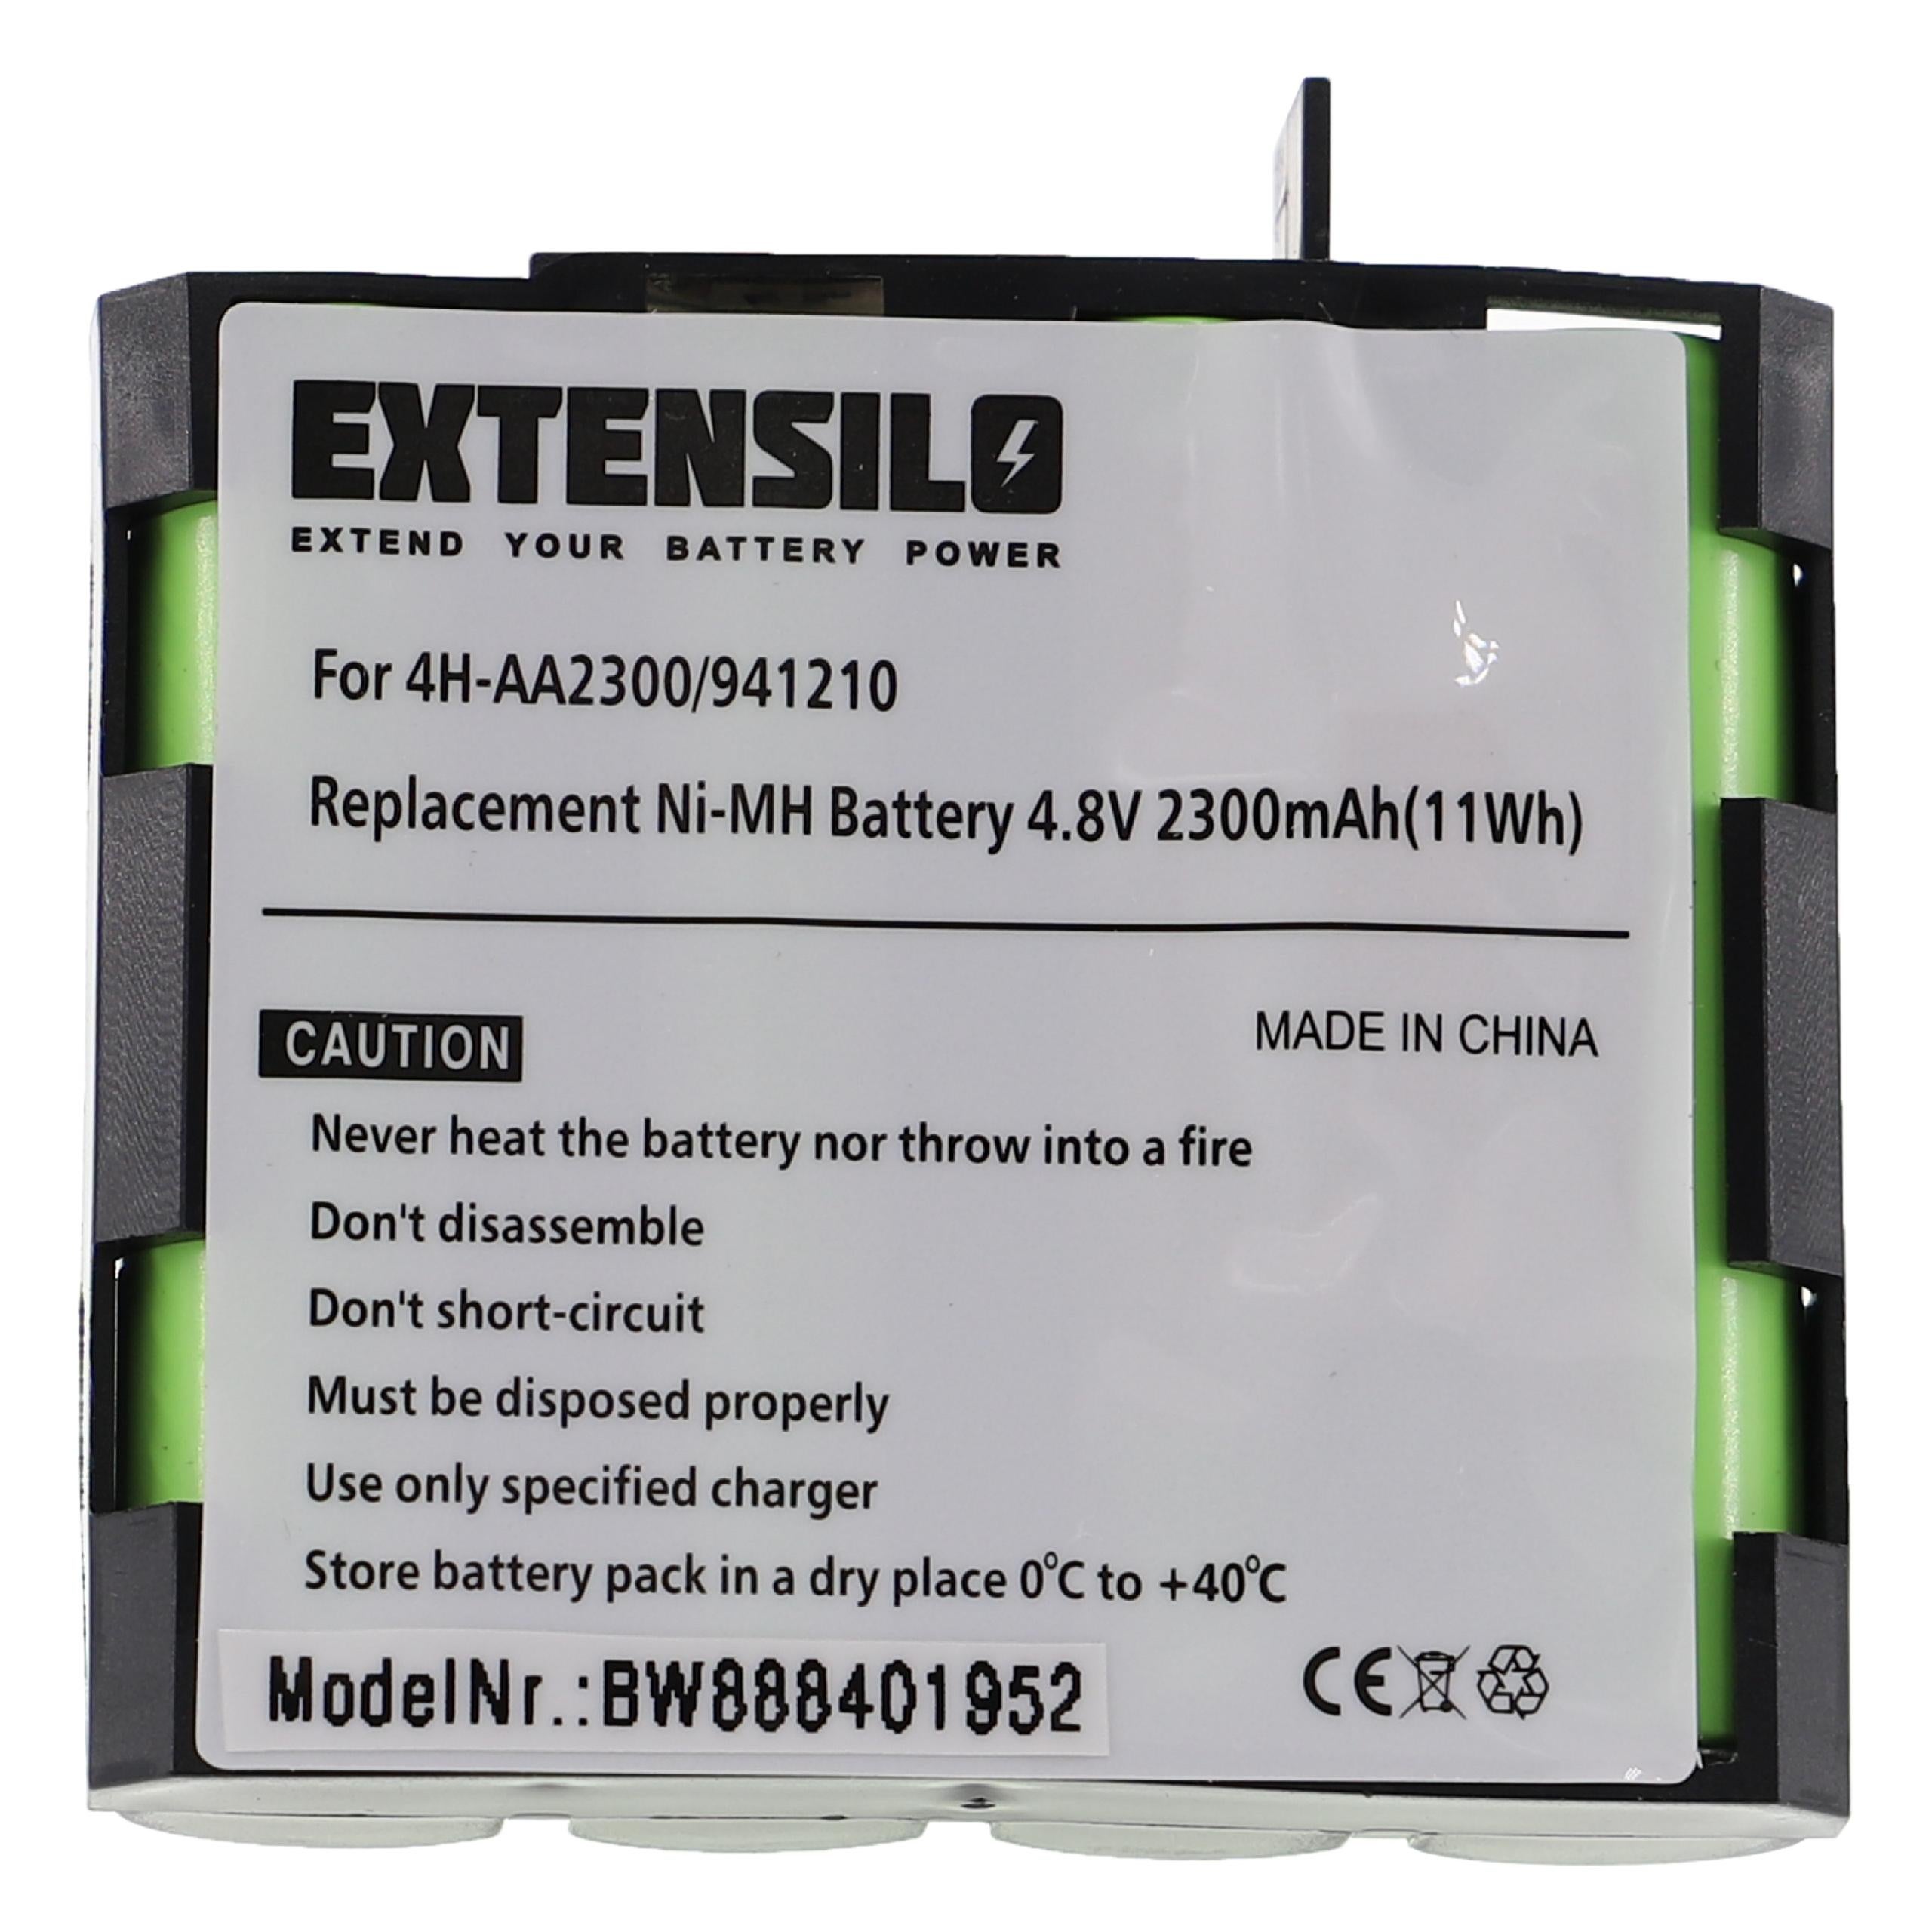 Batterie standard compatible avec le Compex type 4H-AA1500, 941210 4,8V  1500mAh (non d'origine) »